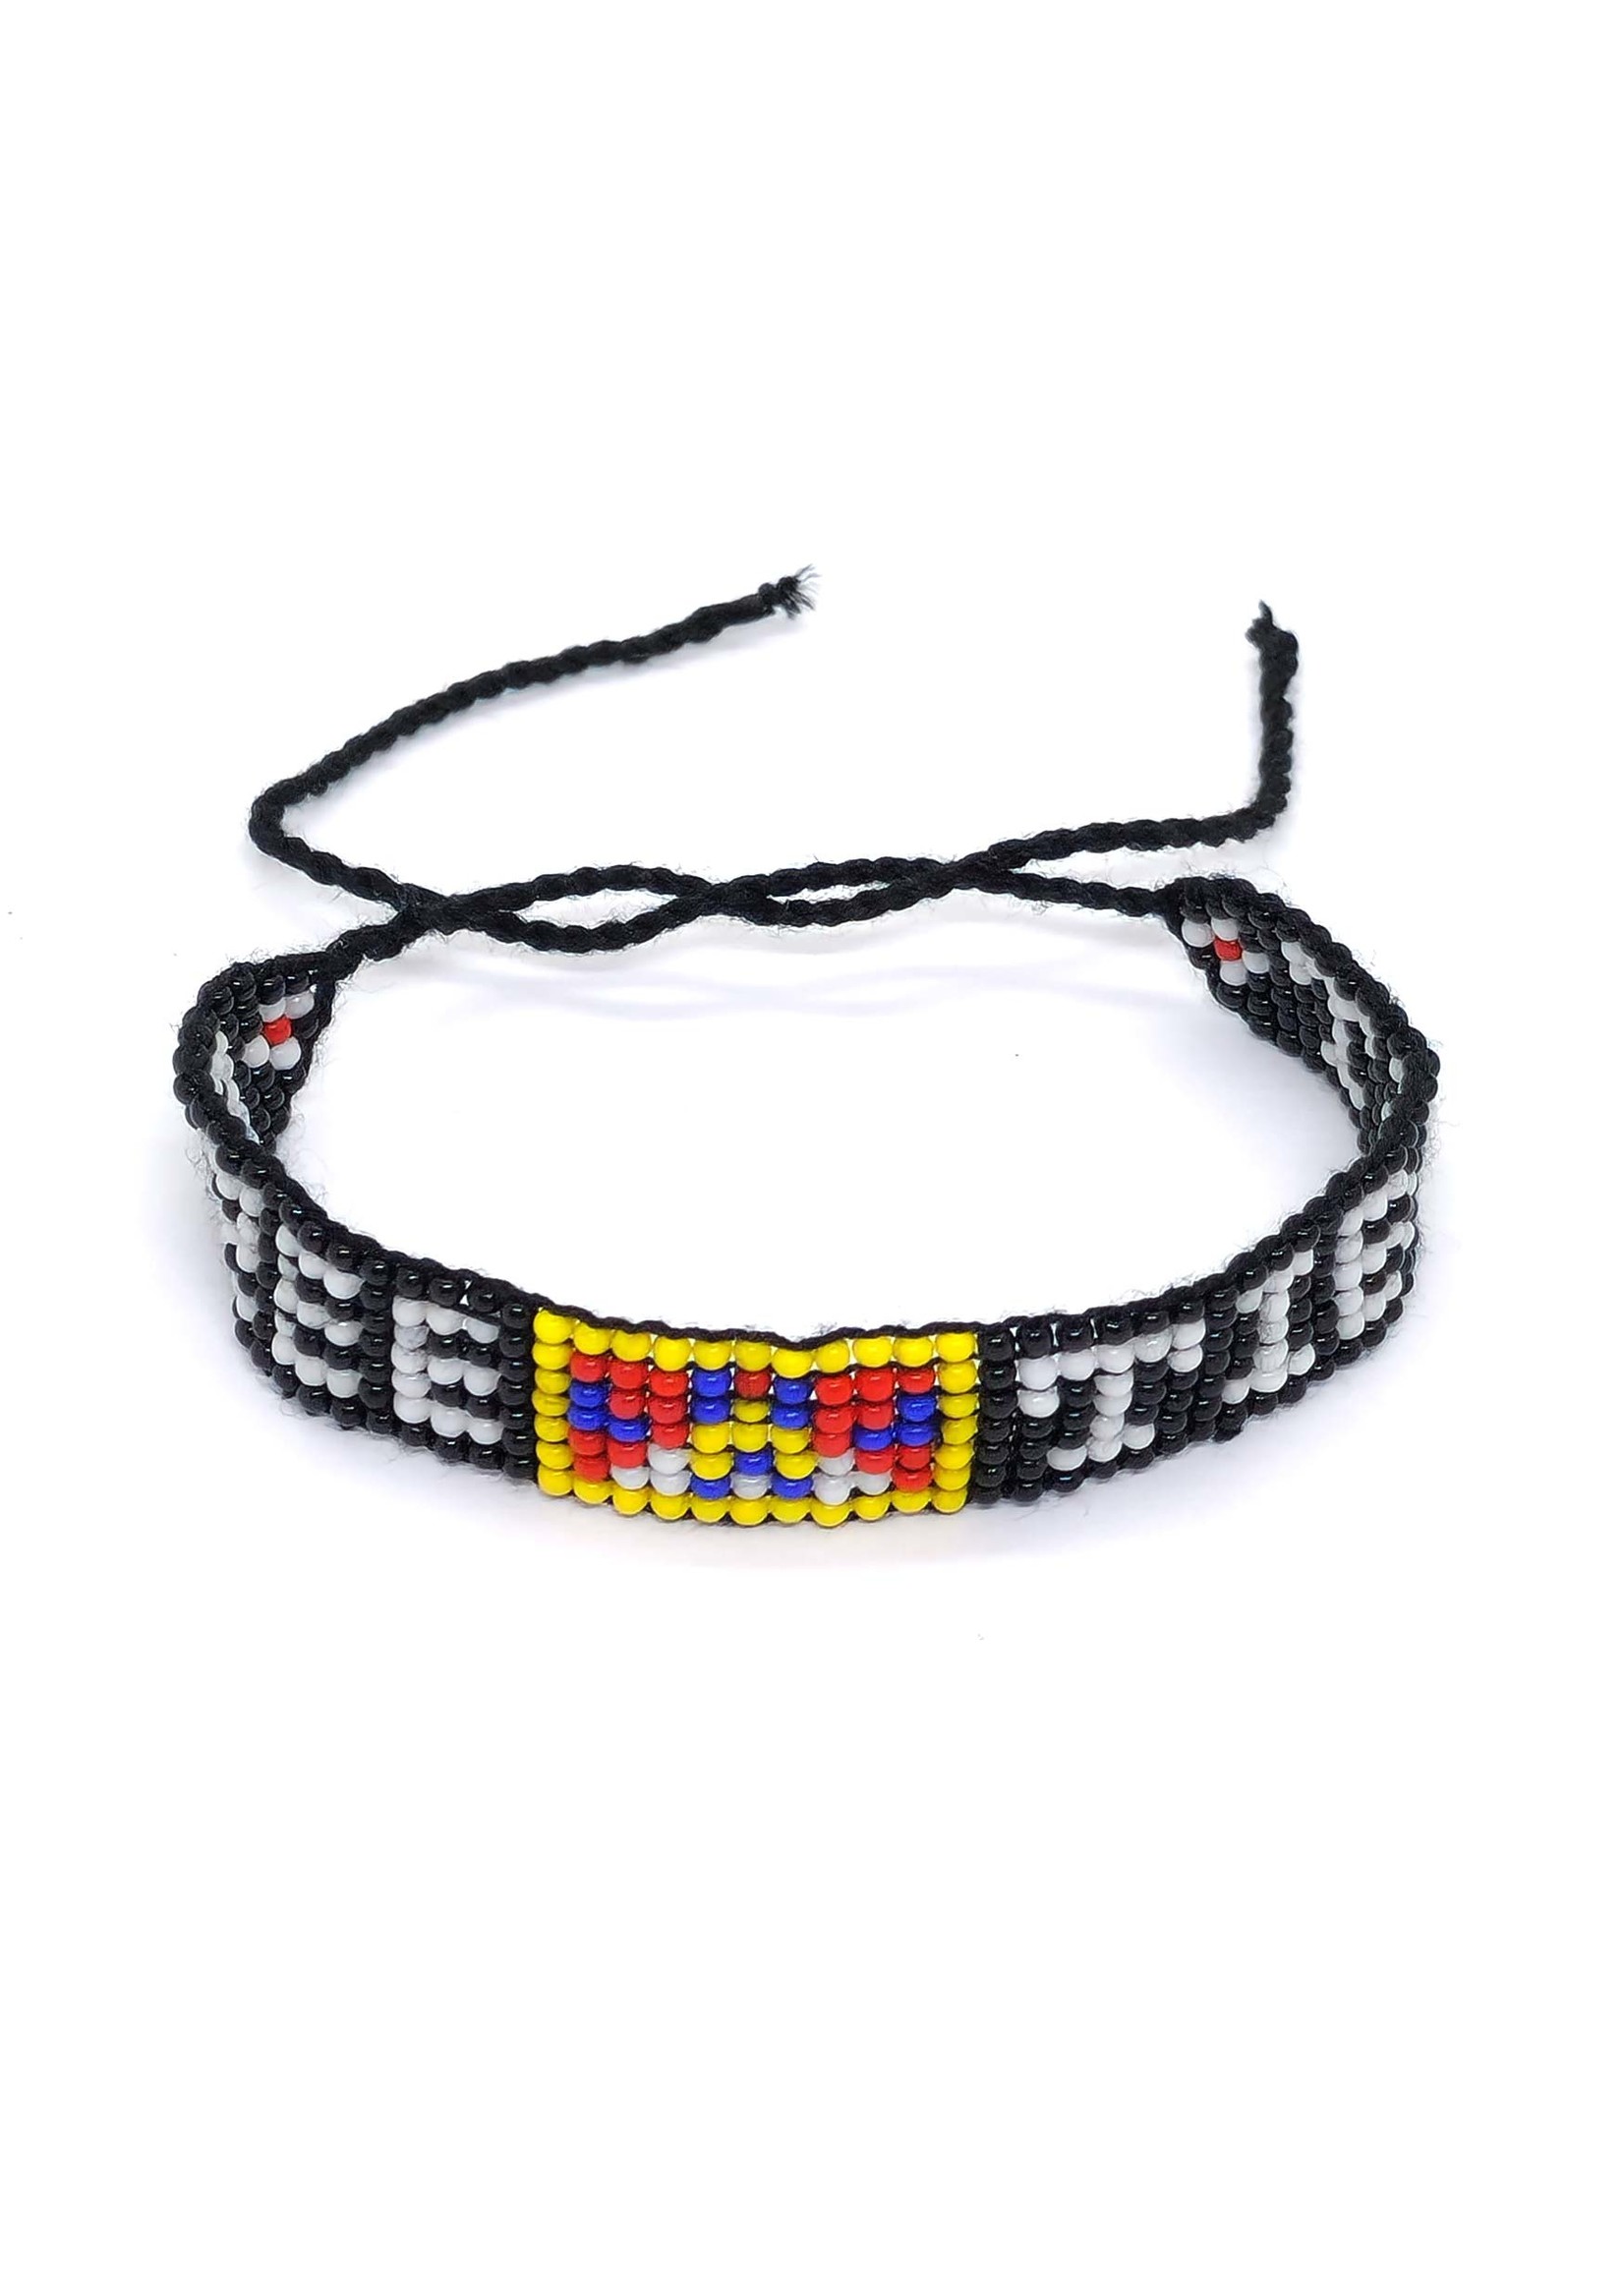 Hand-woven beaded bracelet "FREE TIBET"